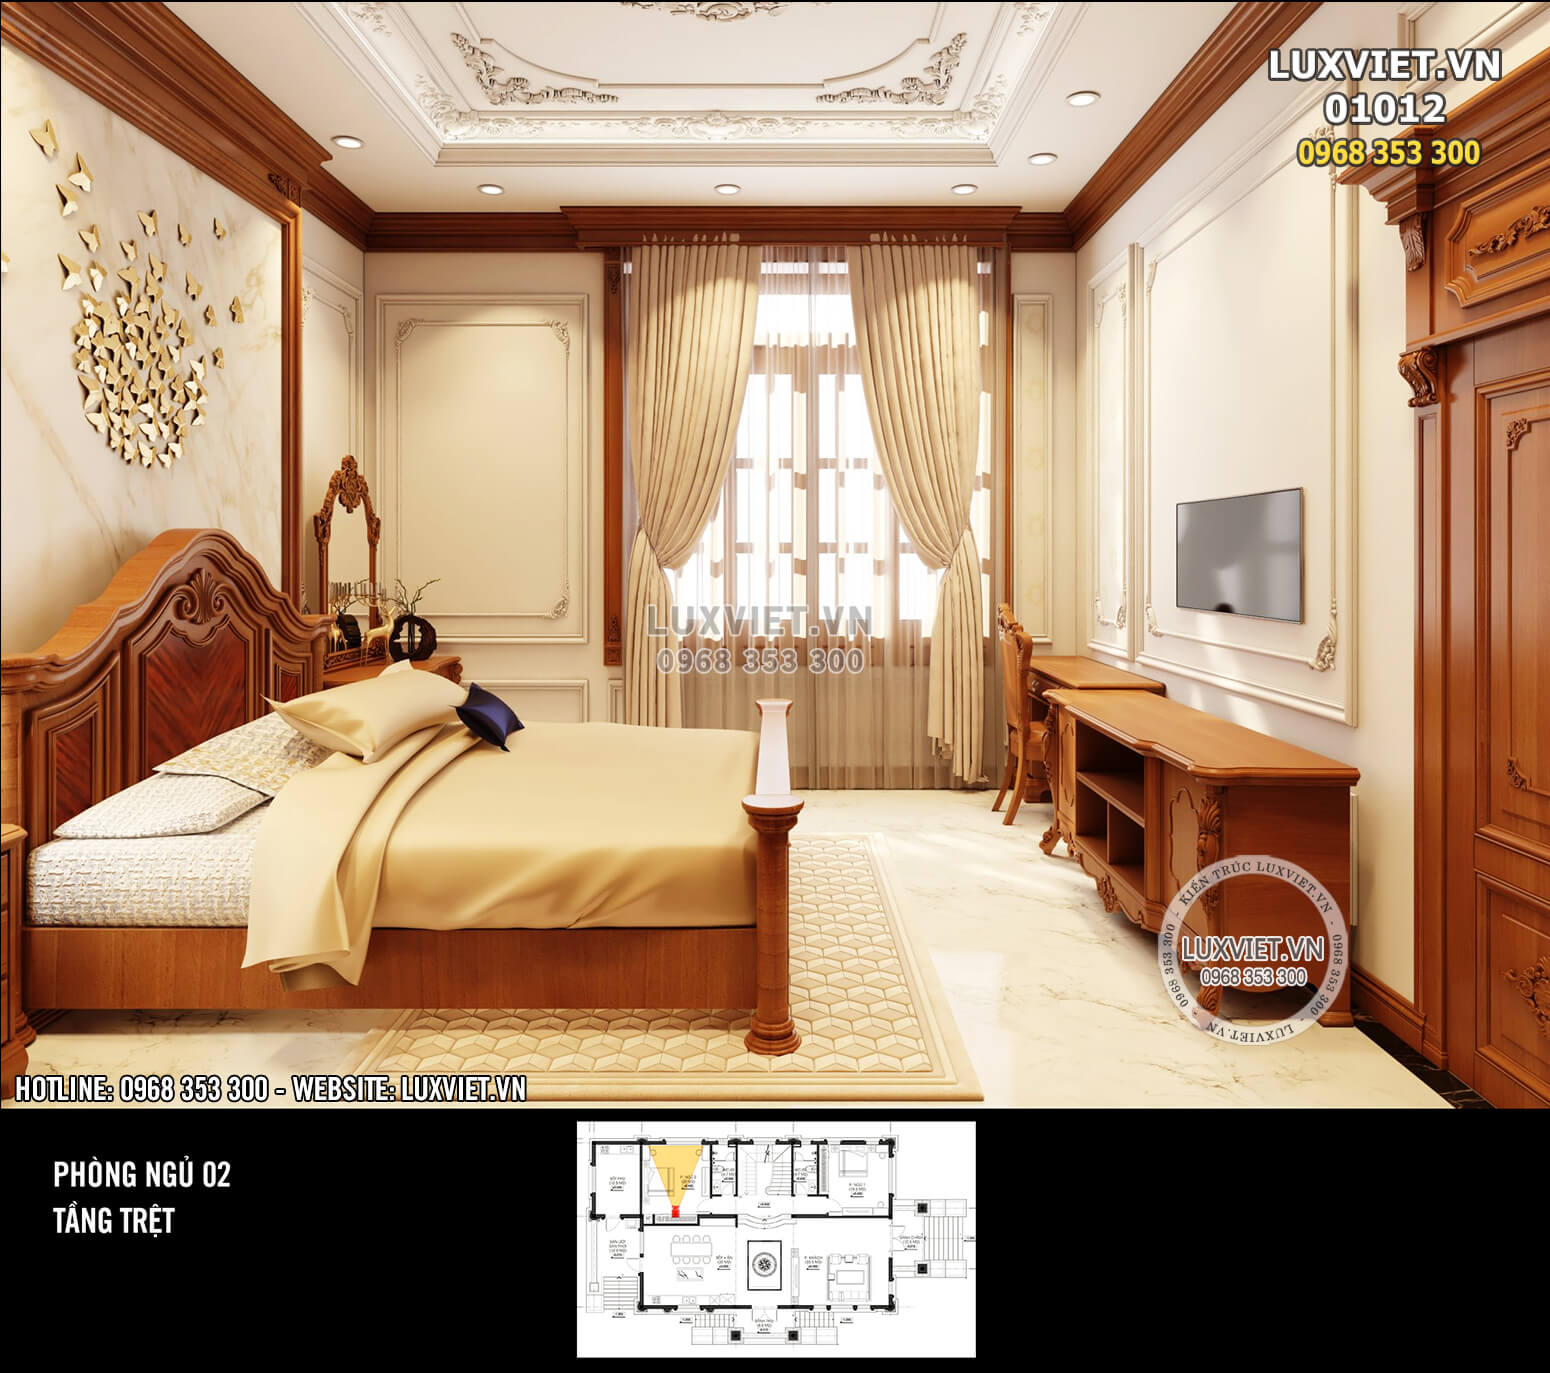 Hình ảnh: Không gian phòng ngủ mang đậm phong cách kiến trúc tân cổ điển